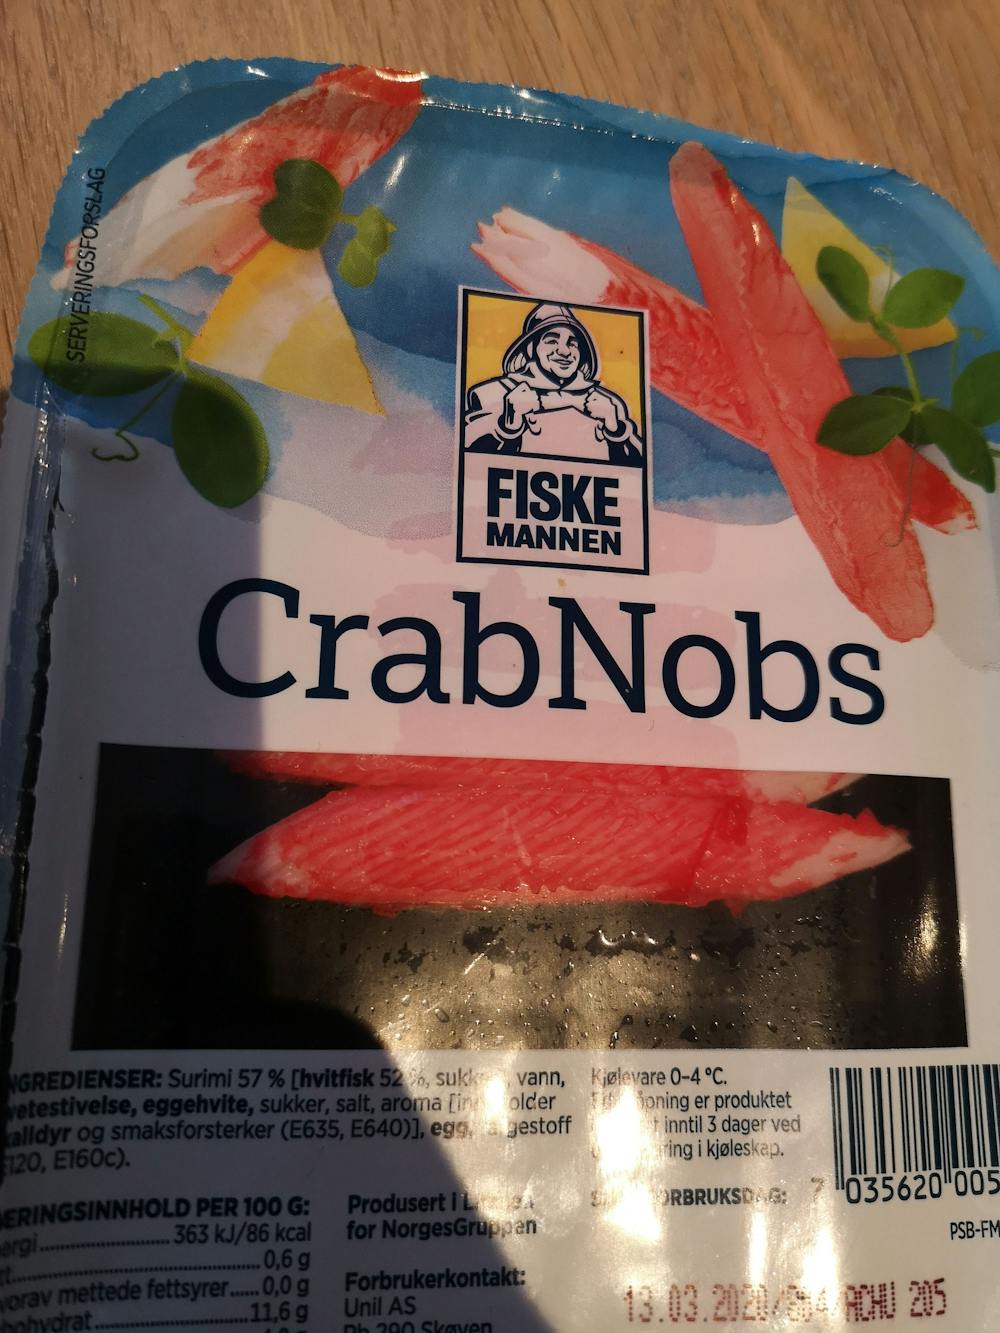 Crab Nobs, Fiskemannen